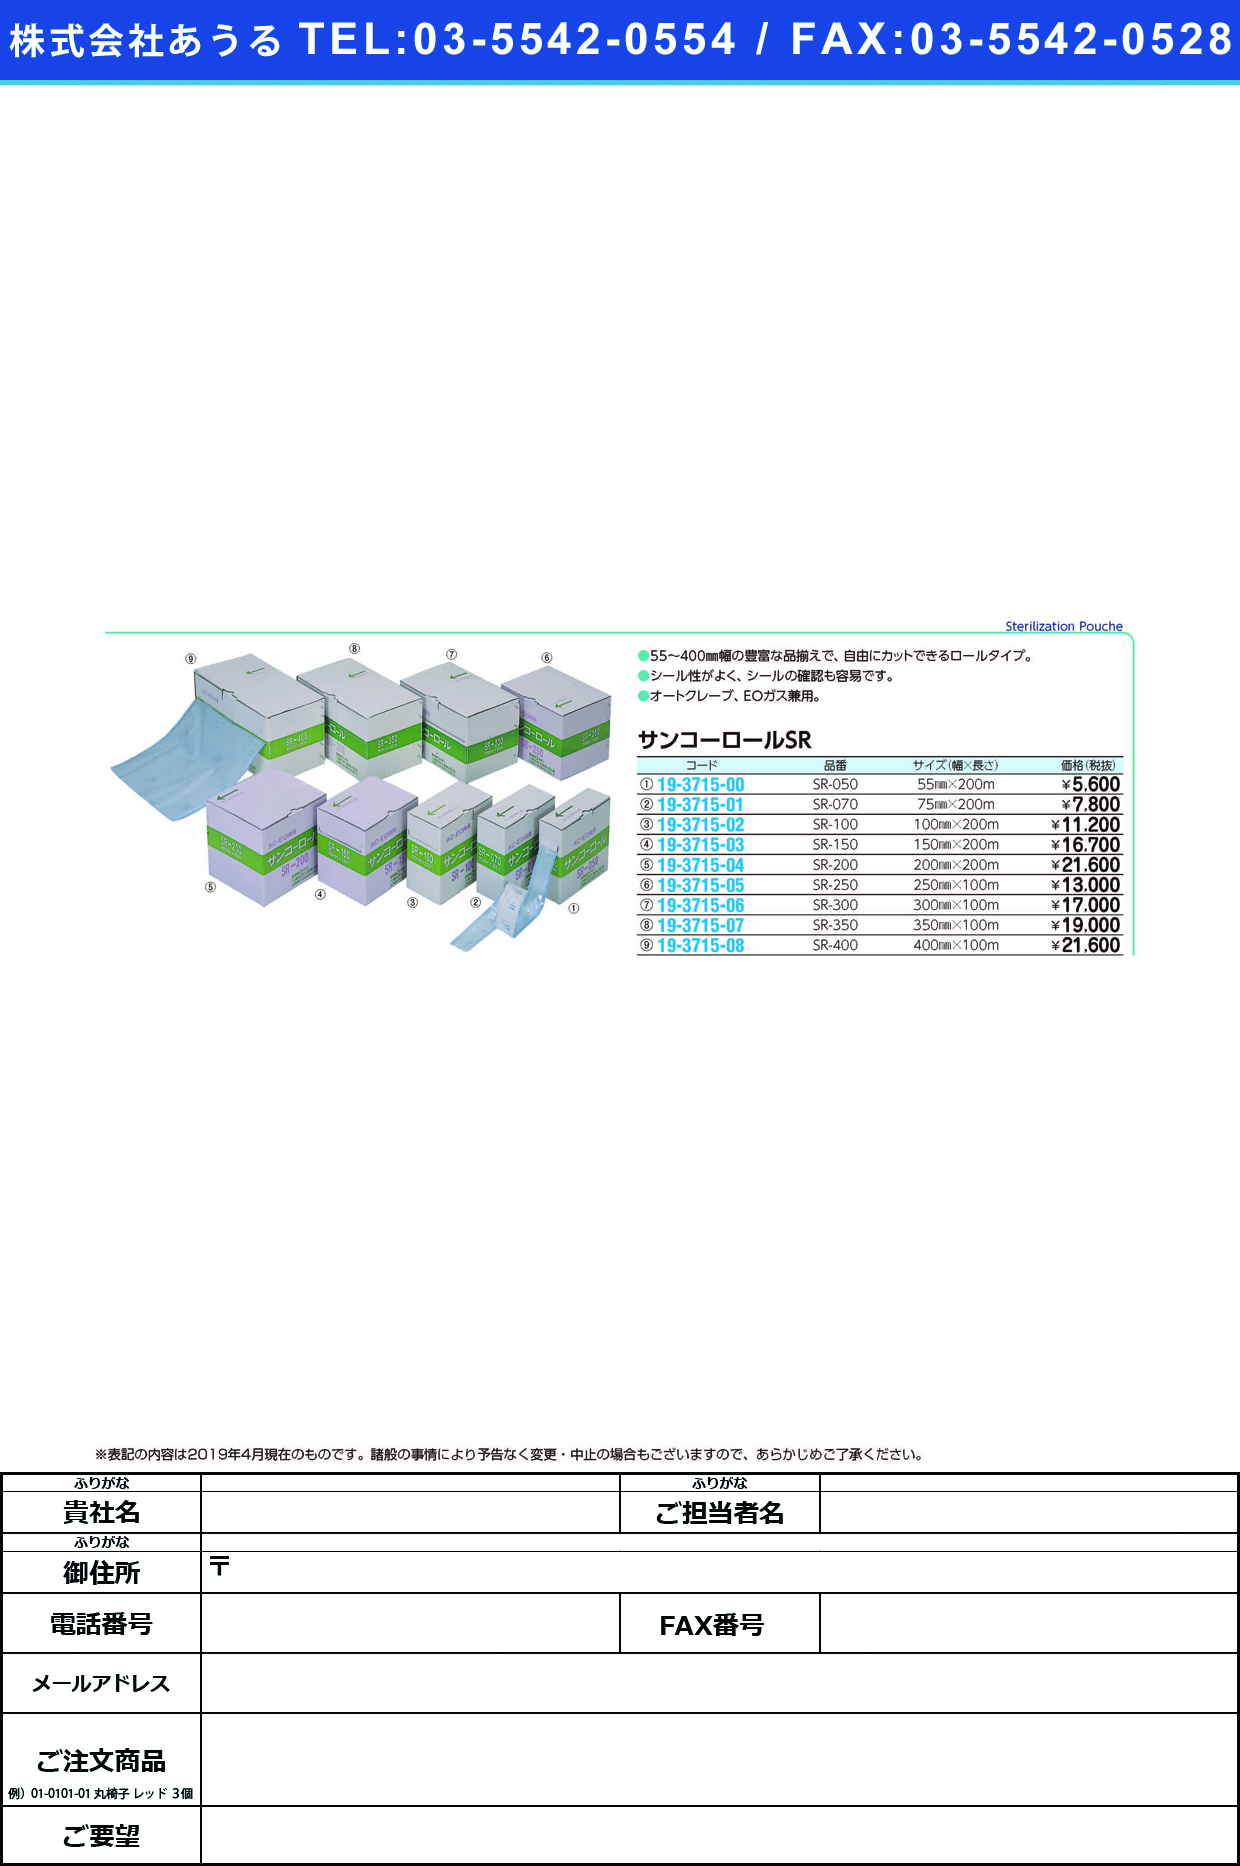 (19-3715-01)サンコーロール SR-070(75MMX200M) ｻﾝｺｰﾛｰﾙ(三興化学工業)【1巻単位】【2019年カタログ商品】